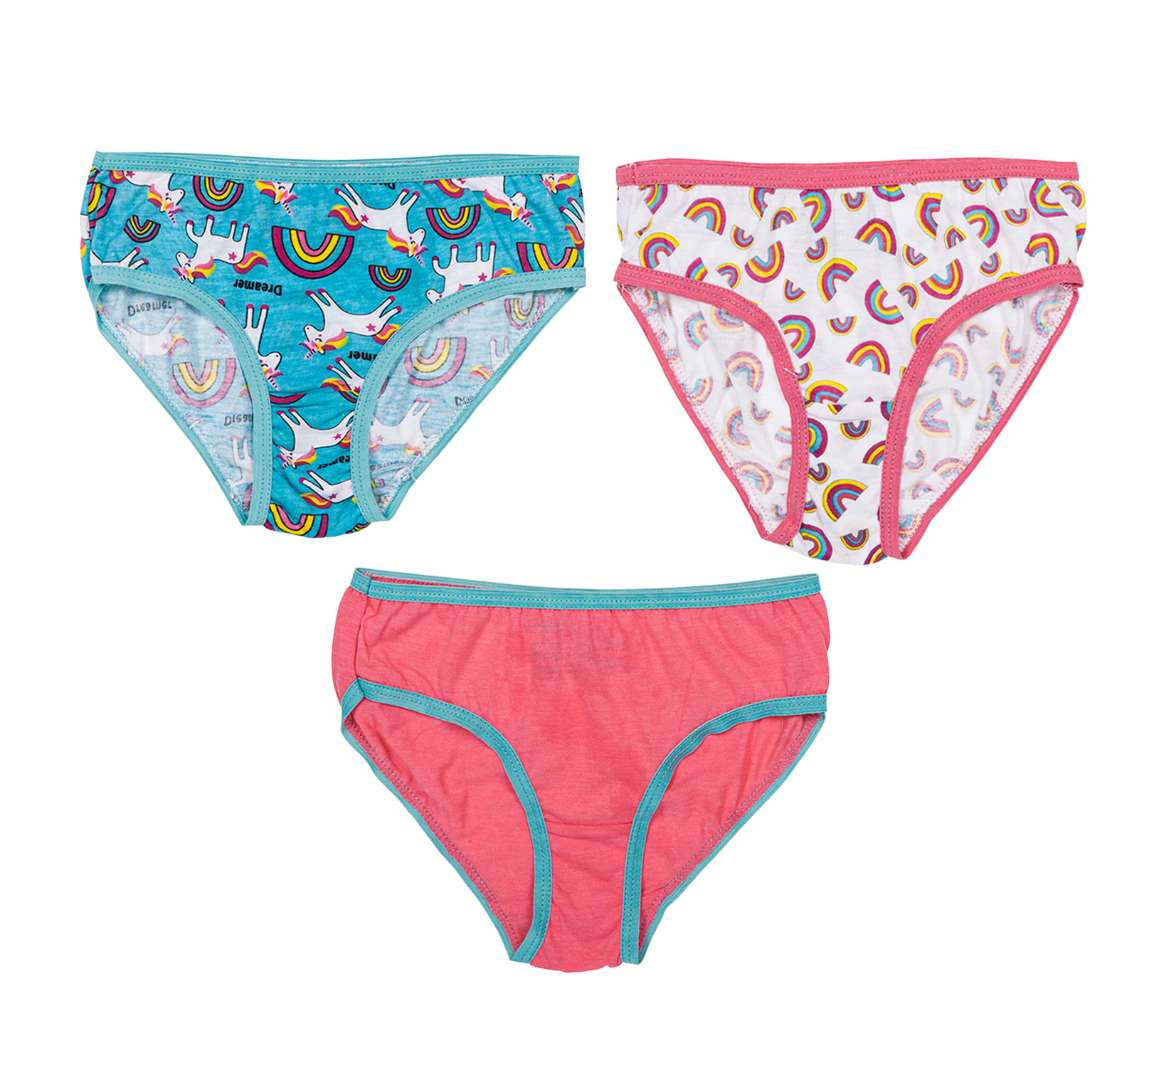 Wholesale 10pk Girl Panties- 2T-4T- Assorted Colors 10ASST-MULTICOLOR